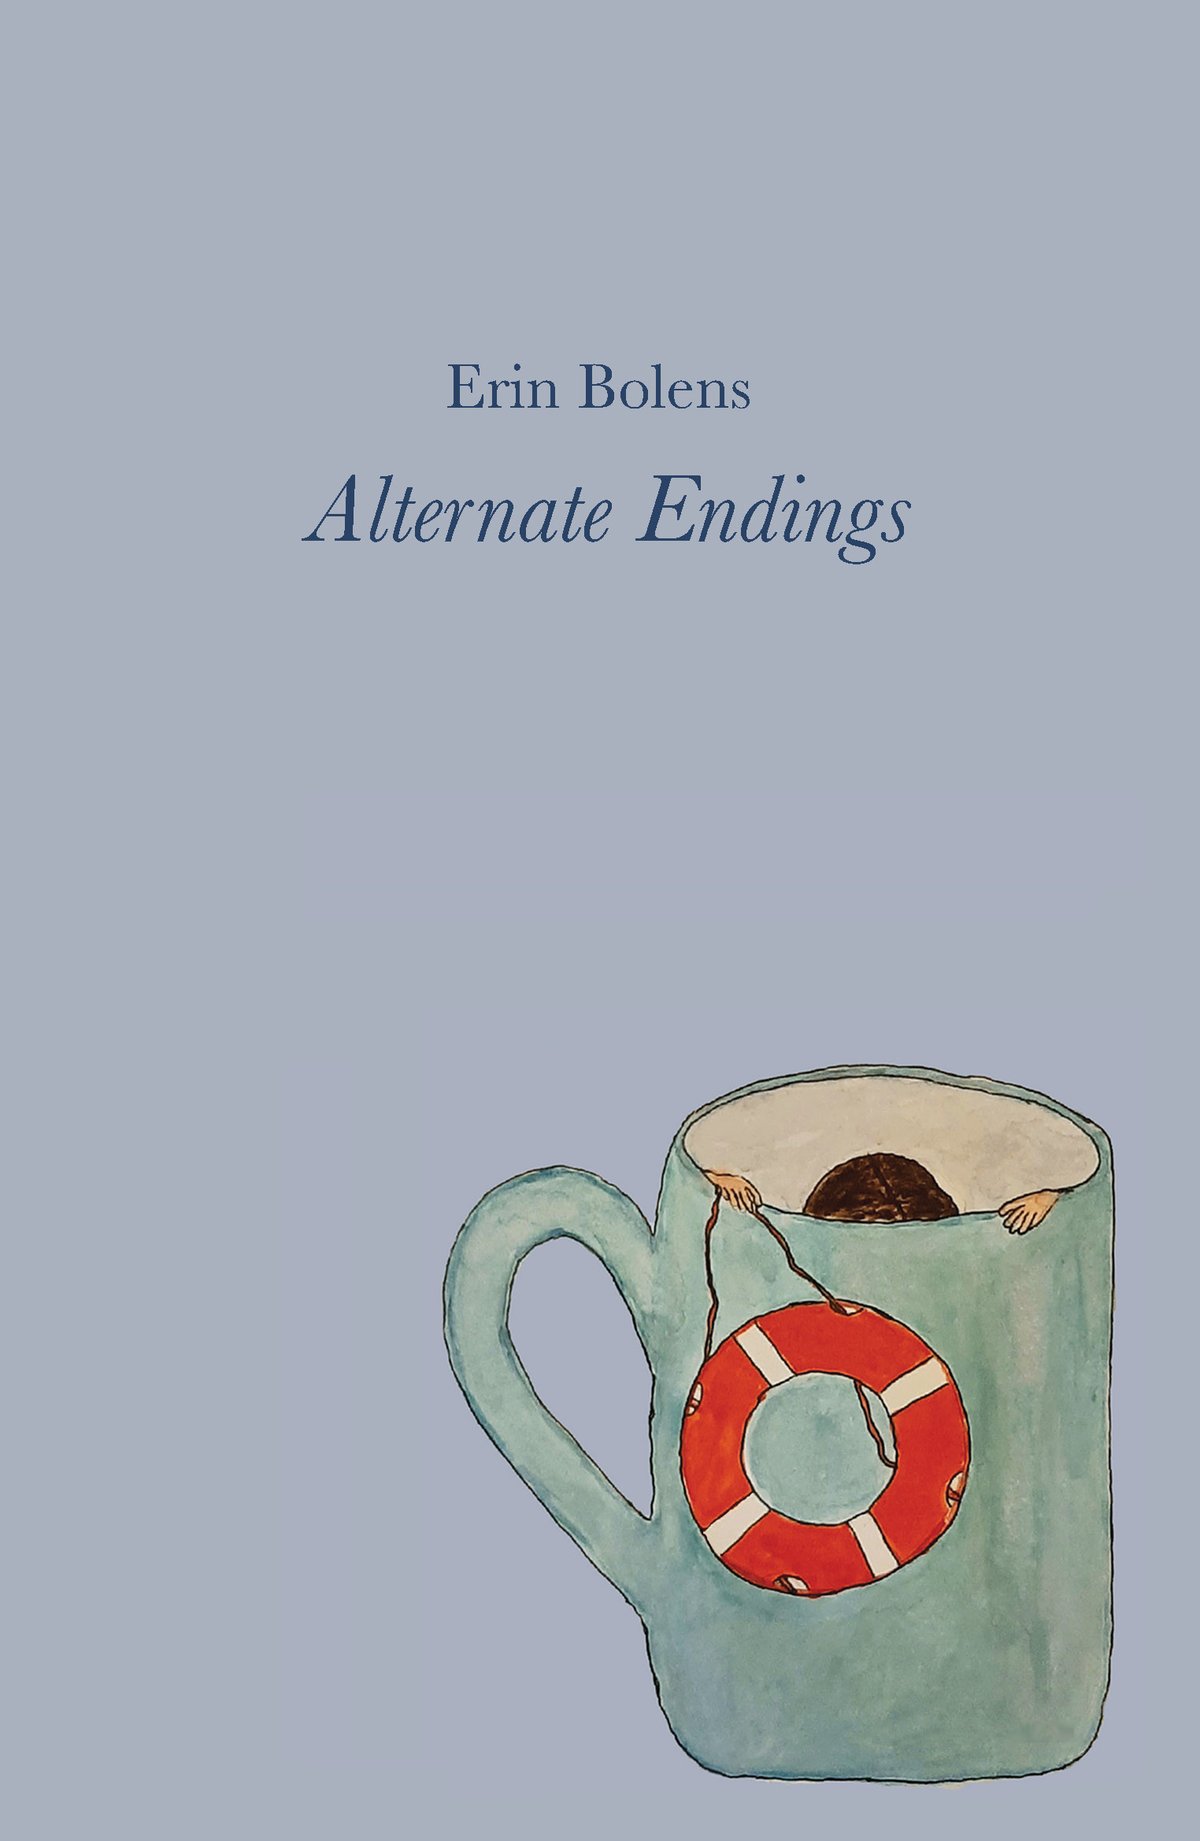 Image of Alternate Endings by Erin Bolens